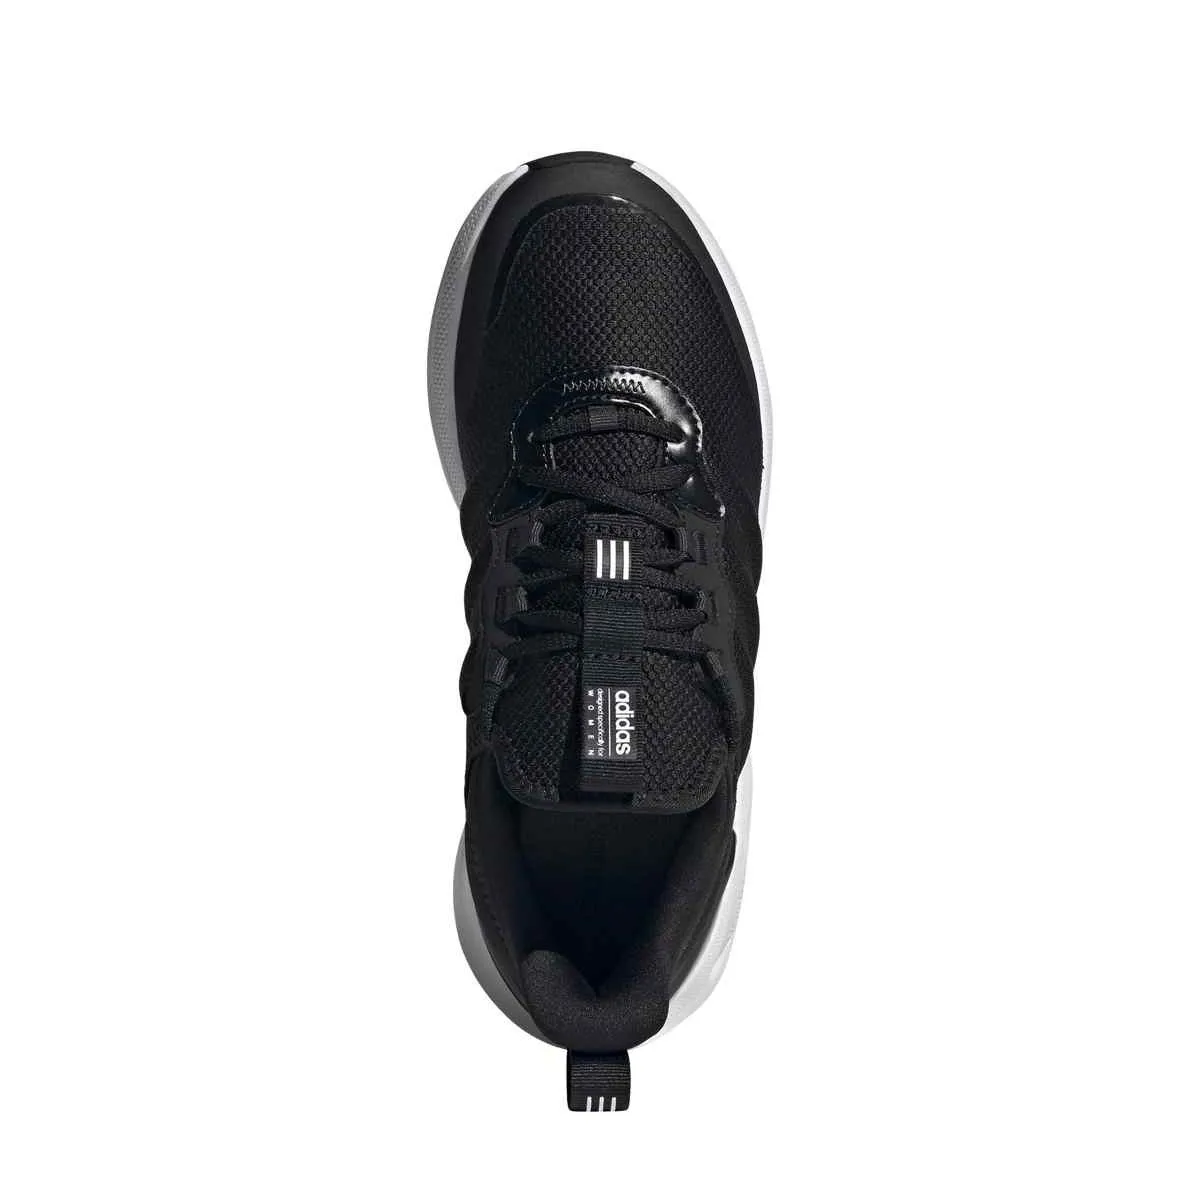 Zapatillas deportivas adidas Purecomfort negras/blancas